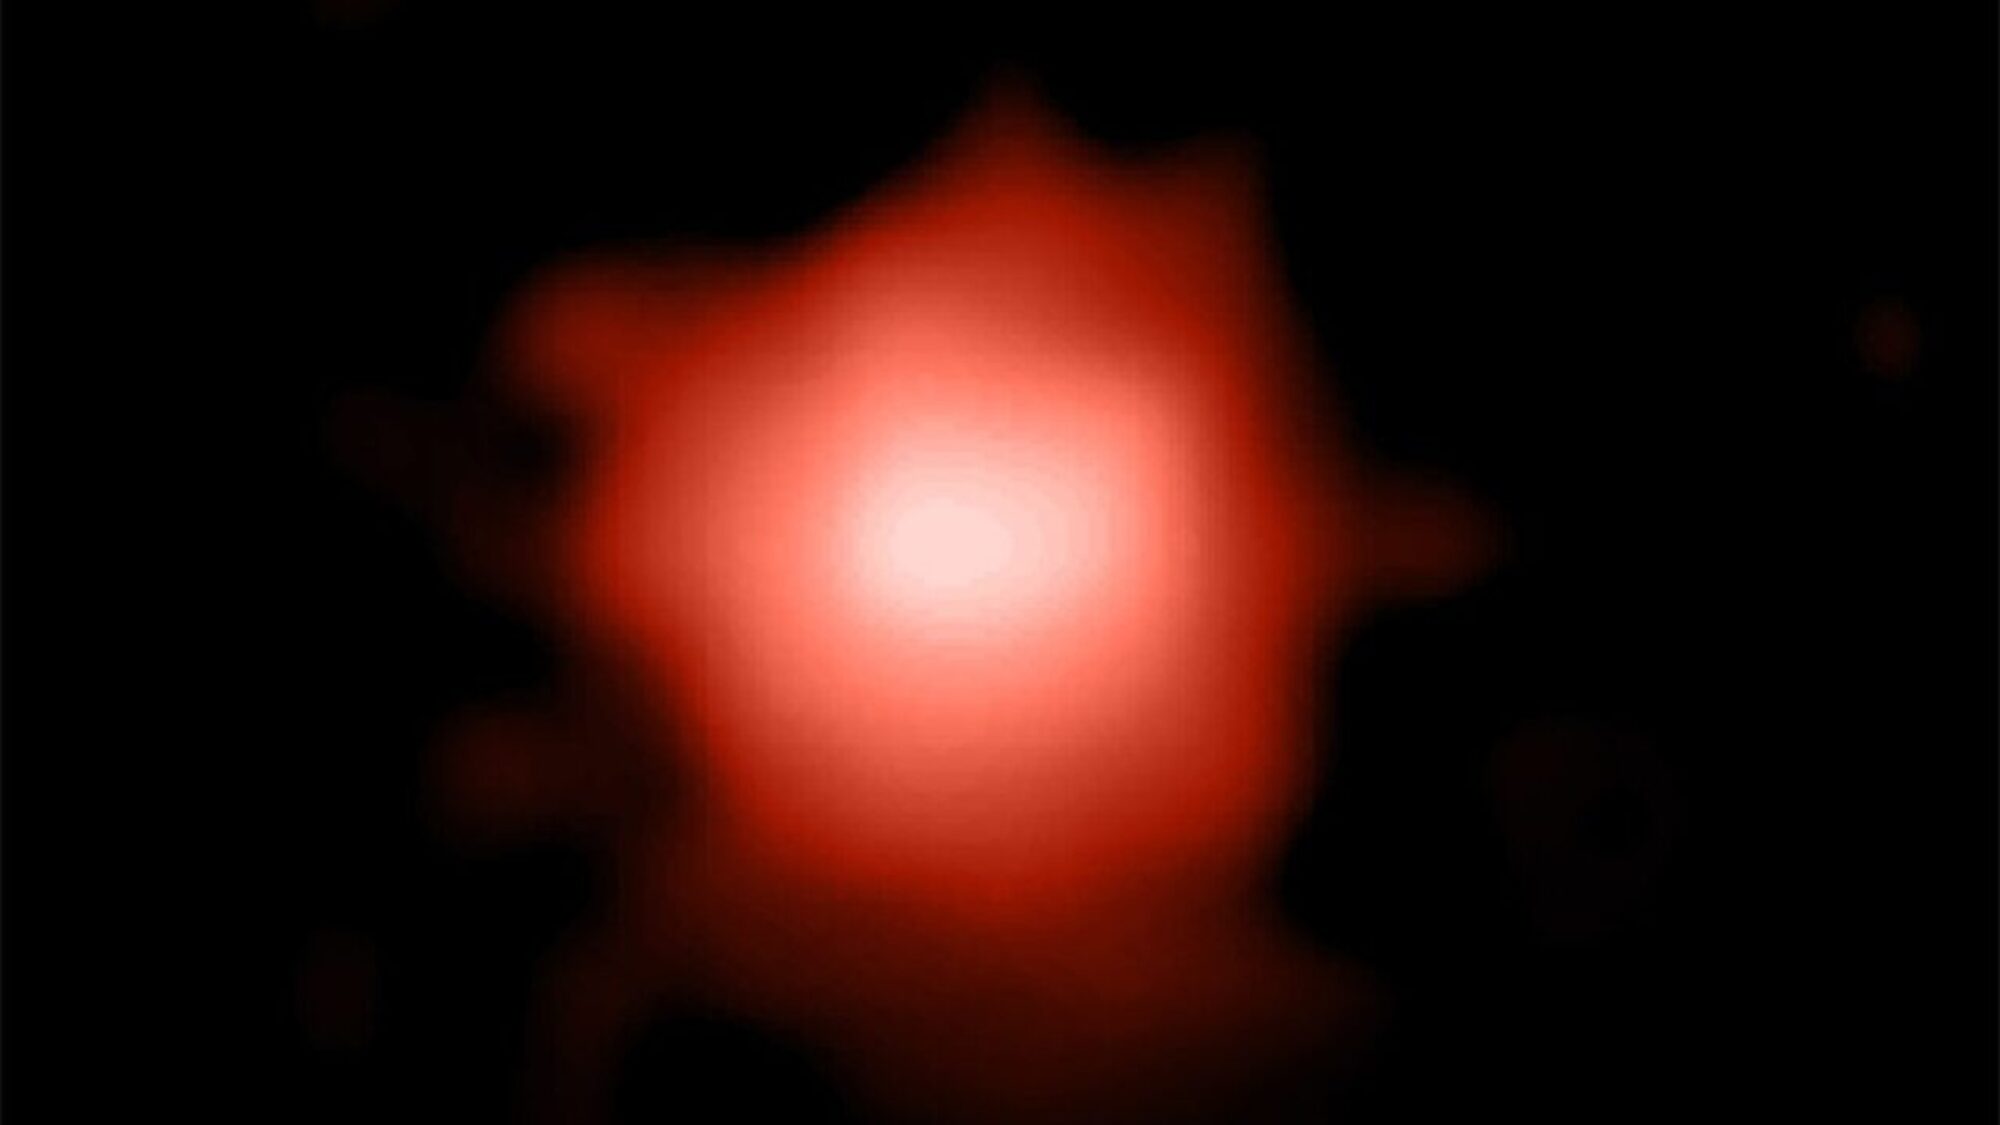 El telescopio James Webb continúa rompiendo records: observa la galaxia más antigua del universo conocido